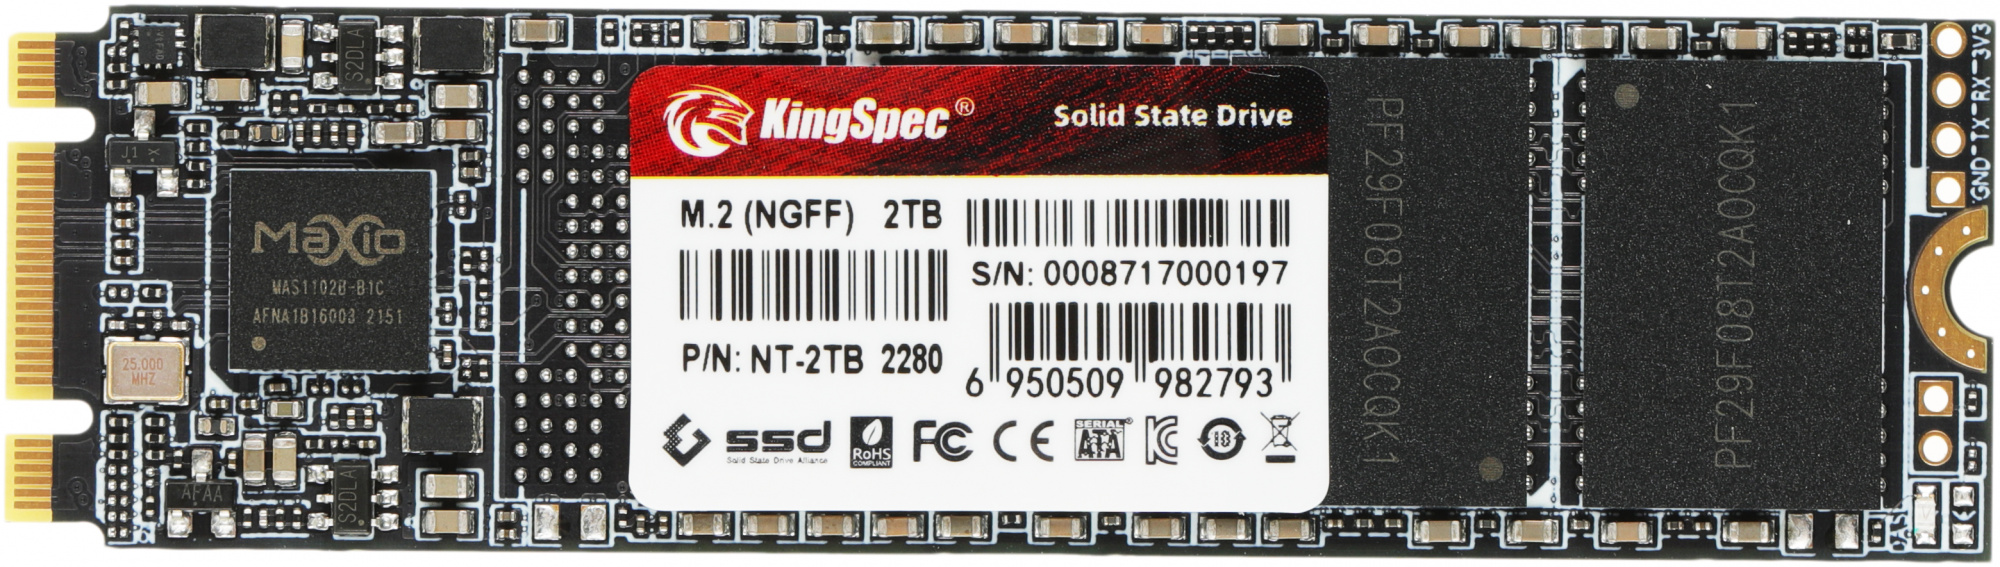 SSD  KINGSPEC NT-2TB 2, M.2 2280, SATA III,  M.2